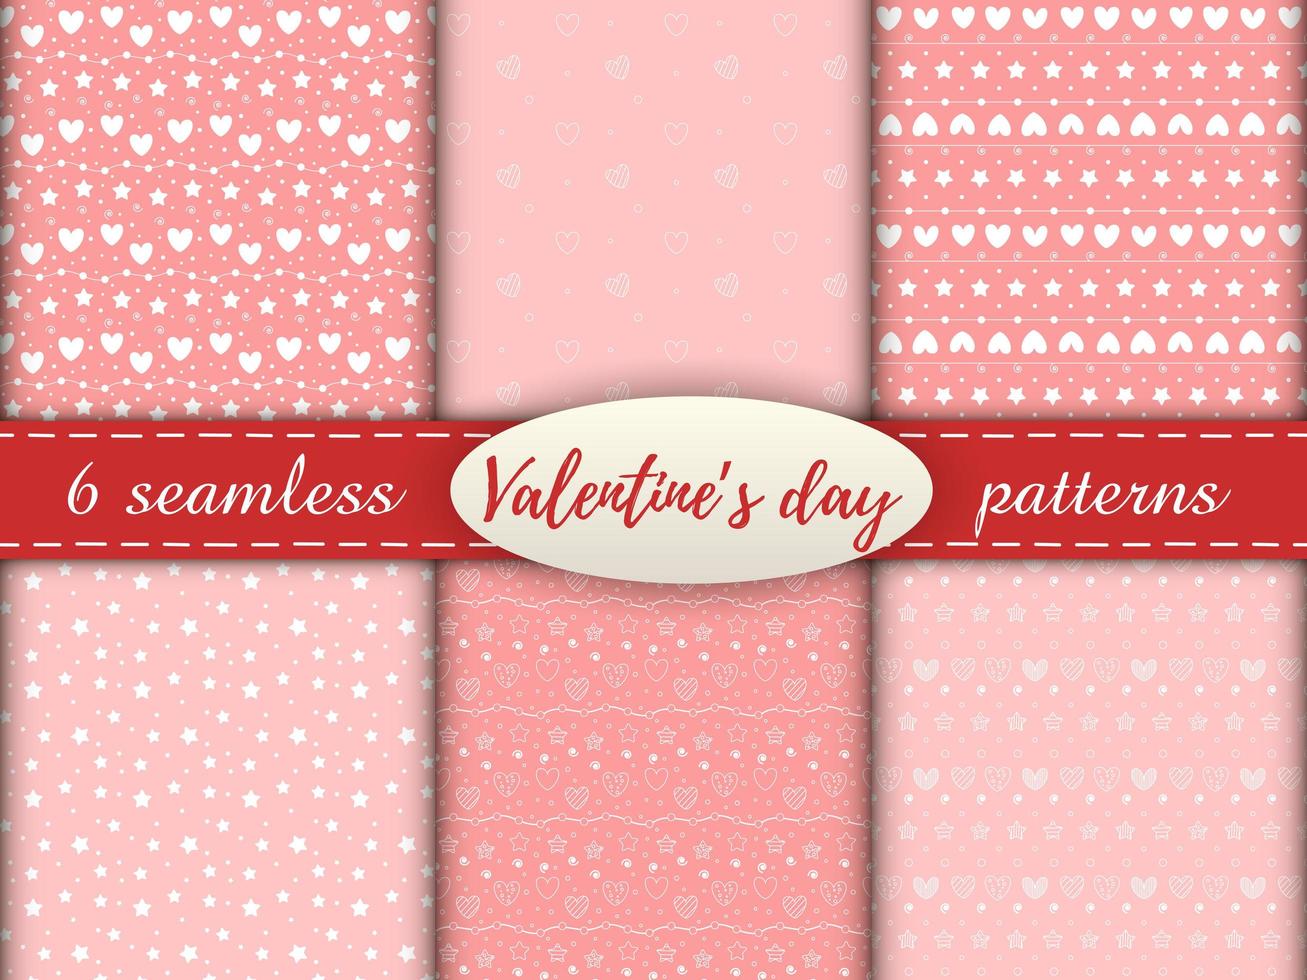 romantische naadloze patronen met een hart. fijne Valentijnsdag. set van 6 patronen met witte hartjes, stippen en sterren op een roze achtergrond. vector